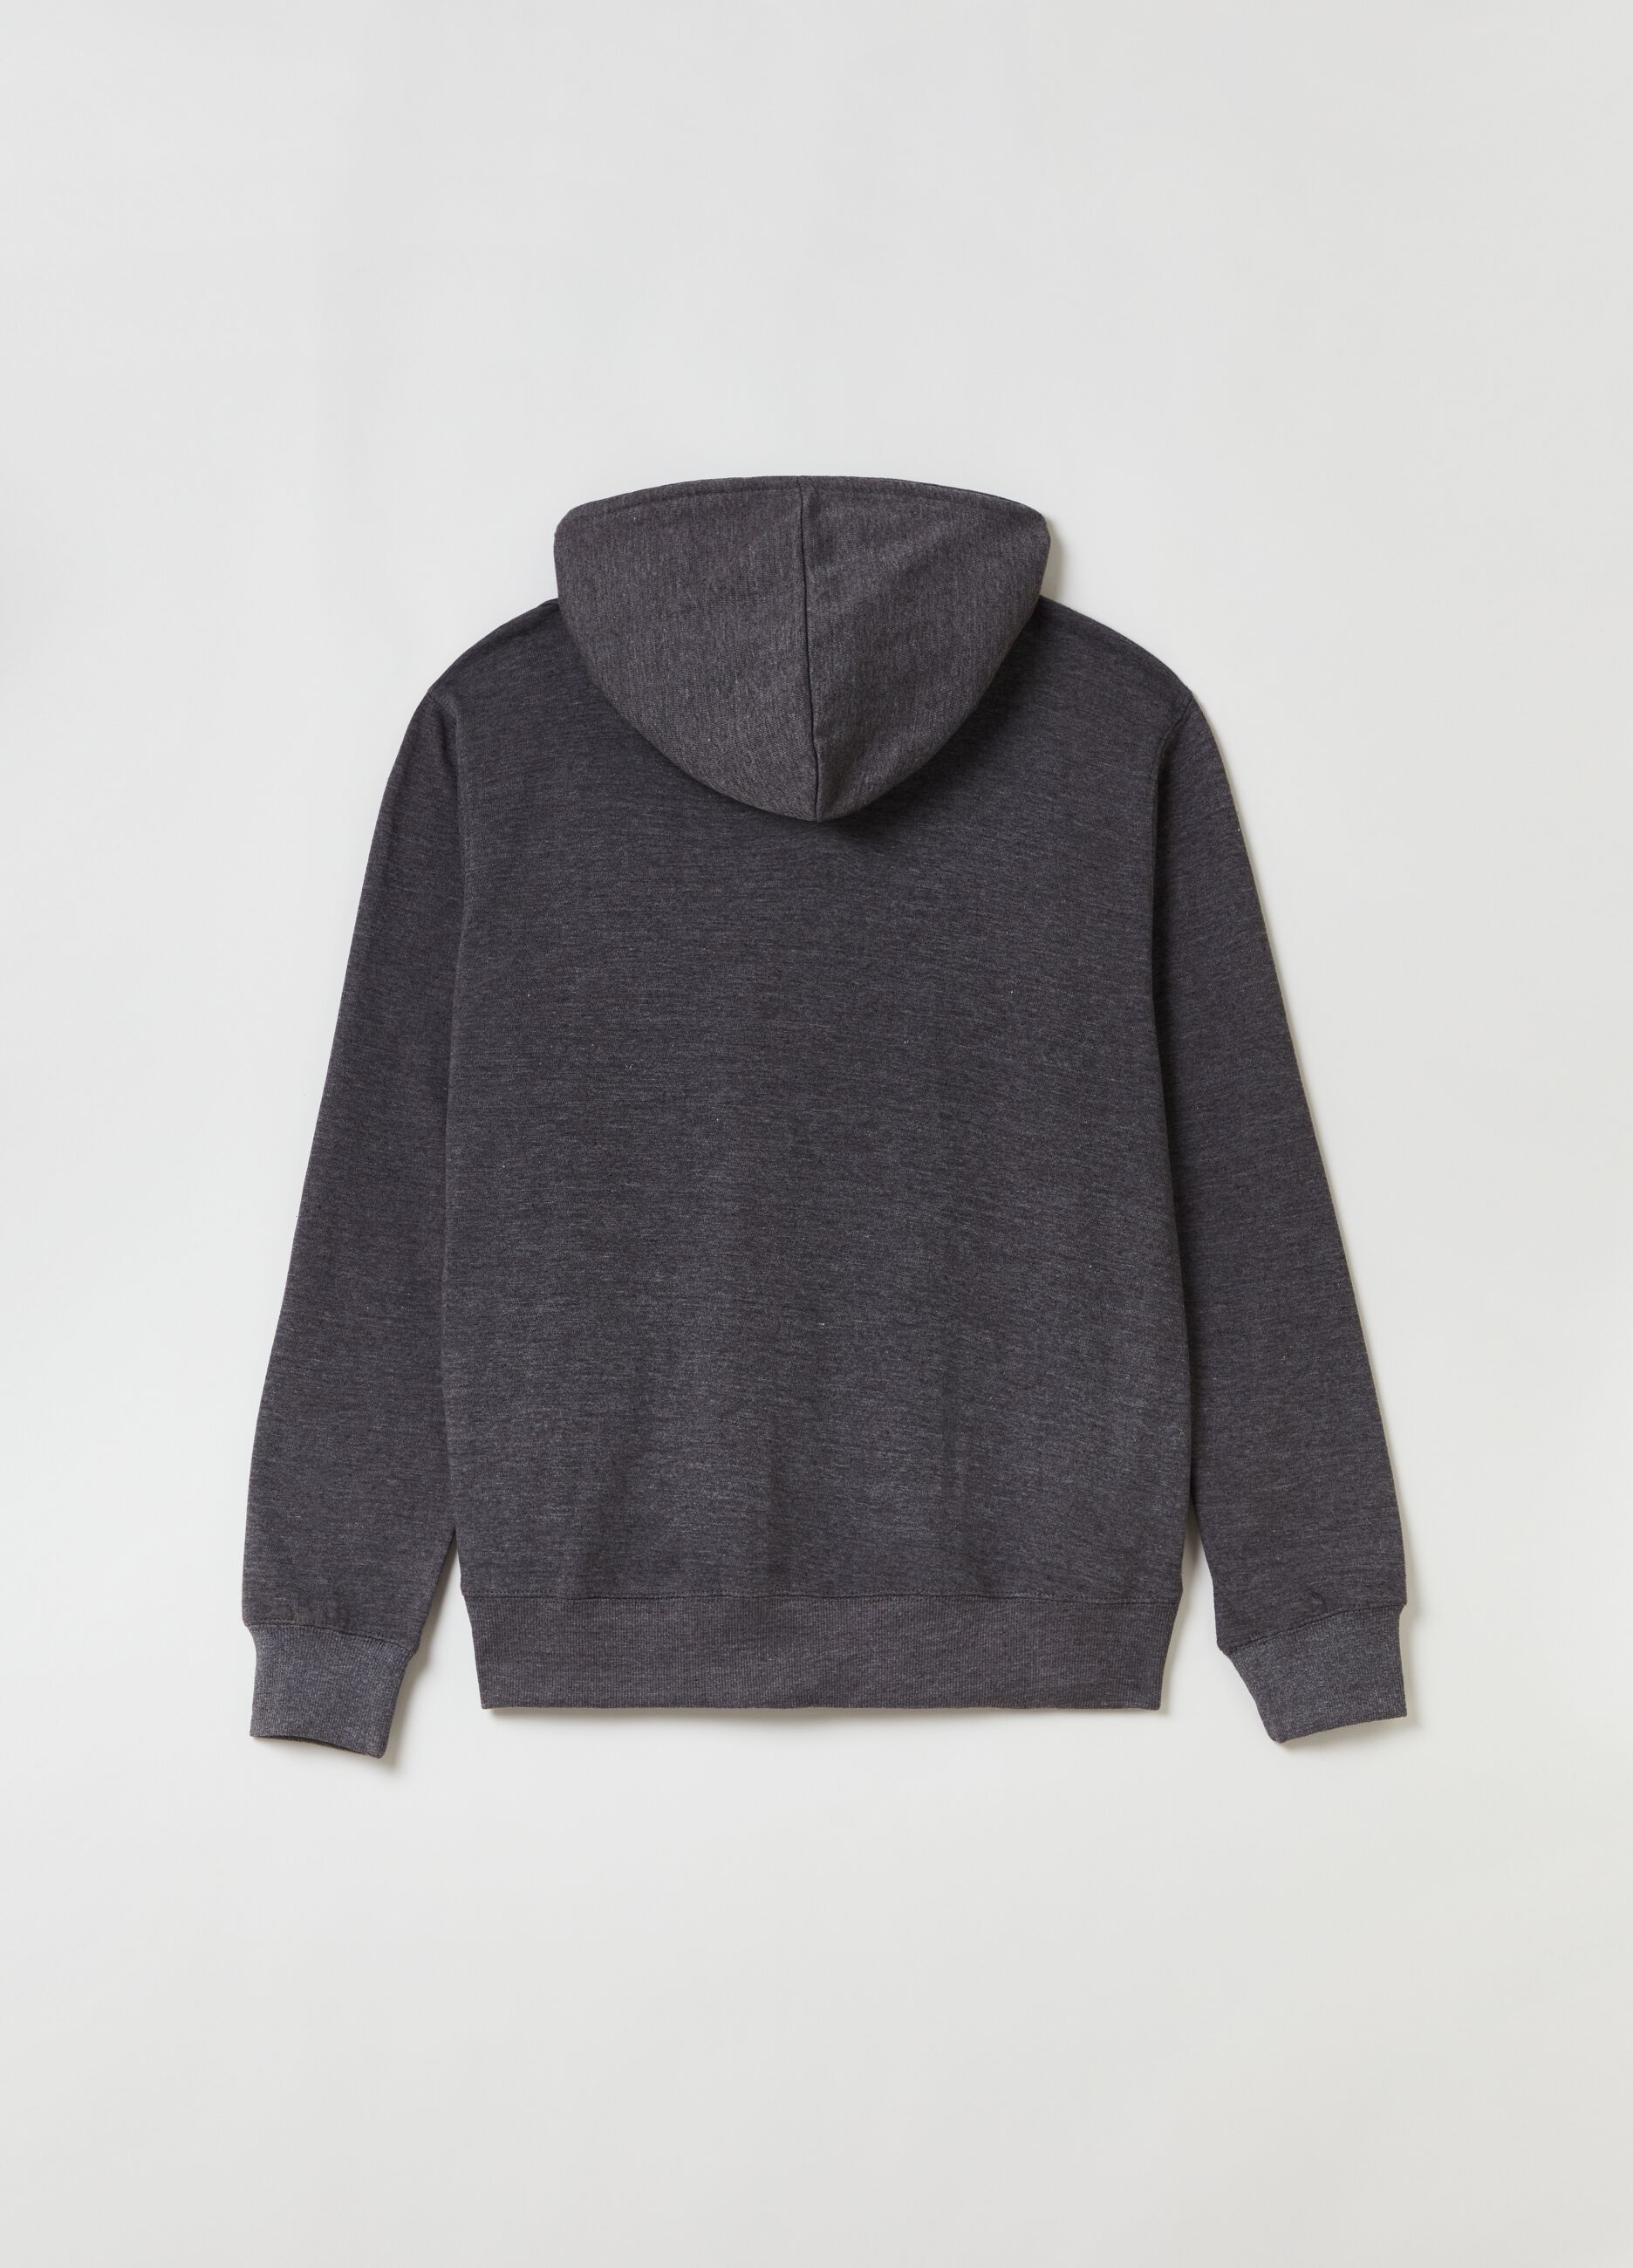 Mélange fleece full-zip top with hood